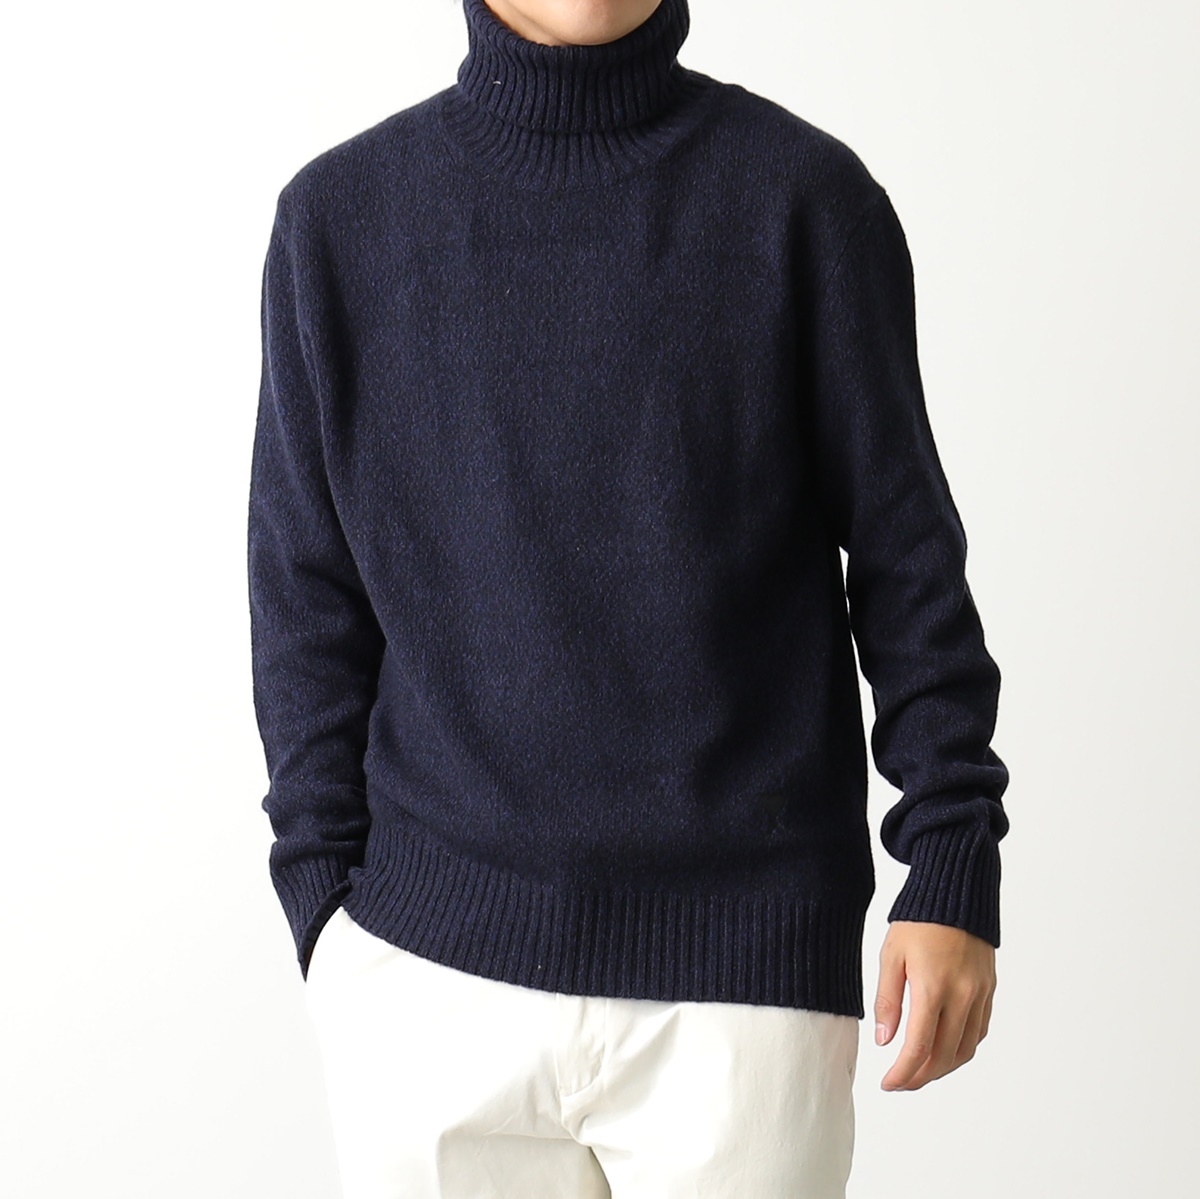 ami paris アミパリス ニット ADC sweater HKS427.005 メンズ セーター タートルネック カシミヤ×ウール 長袖  ハートロゴ 刺繍 カラー3色